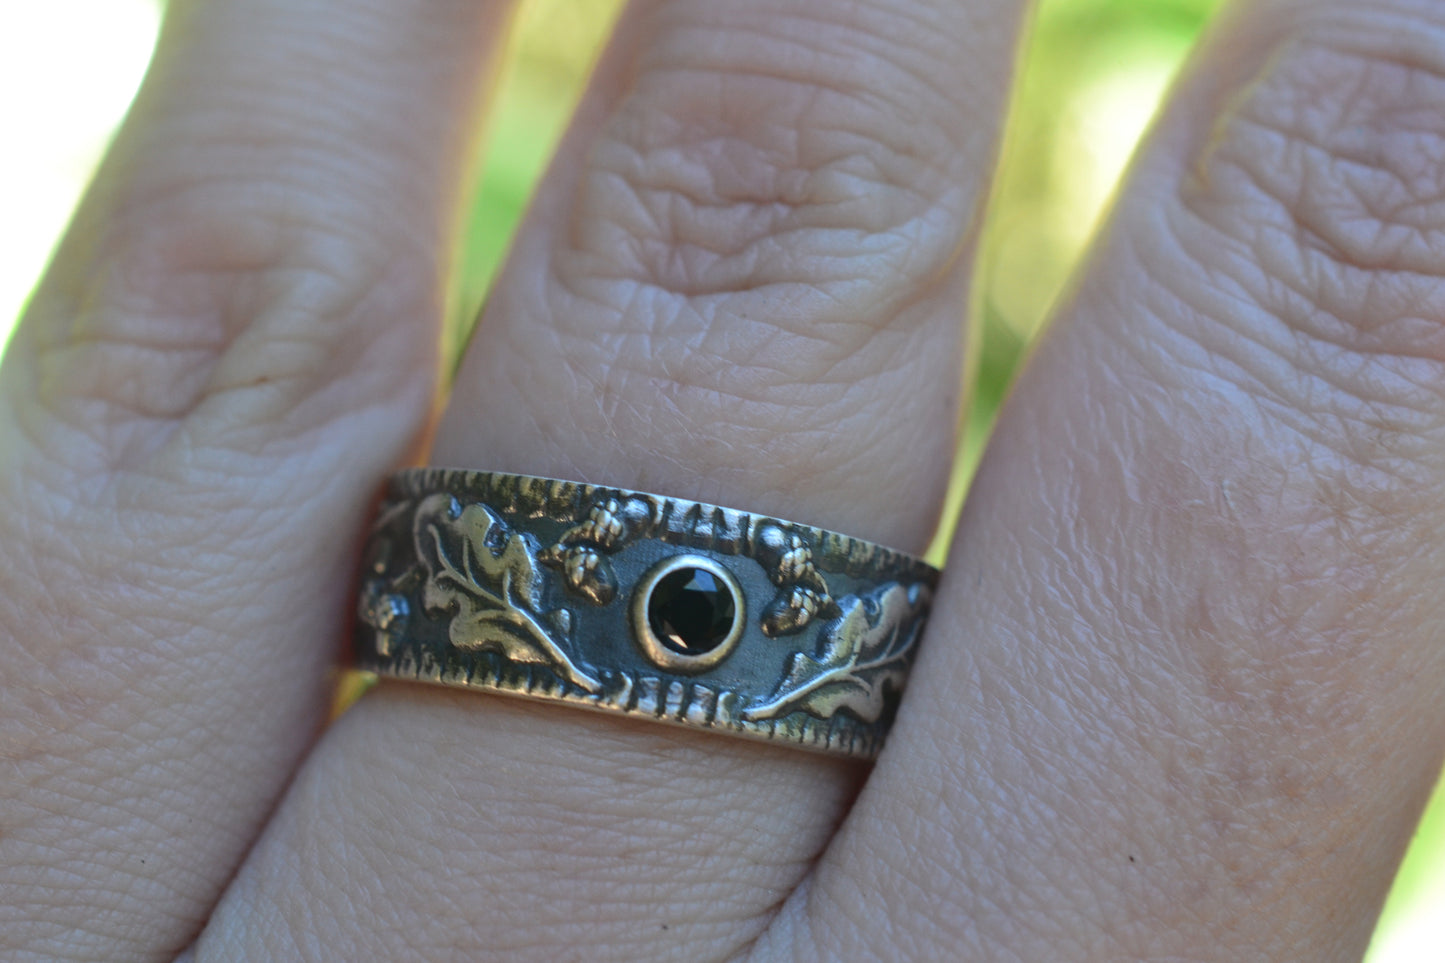 Oak Leaf & Acorn Wedding Ring With Black Crystal